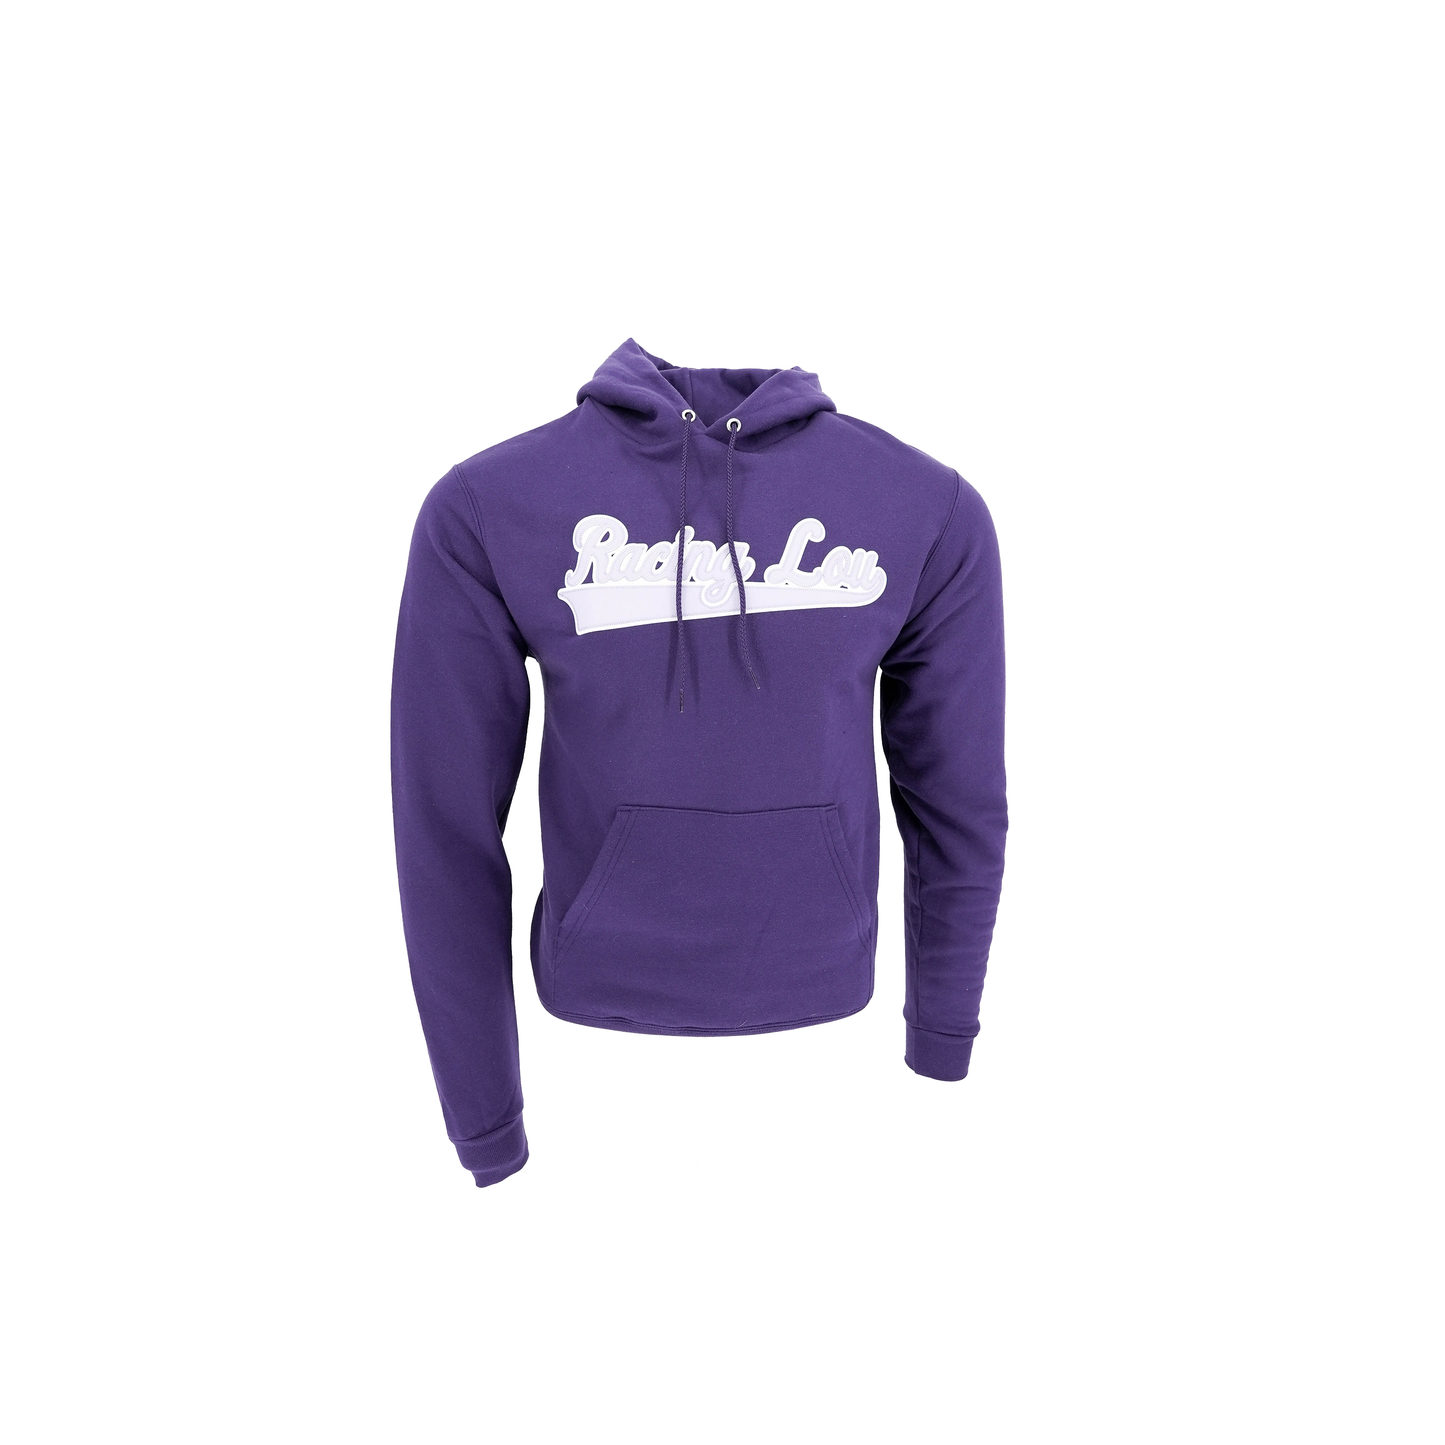 Racing Script Applique Fleece Purple Hooded Sweatshirt